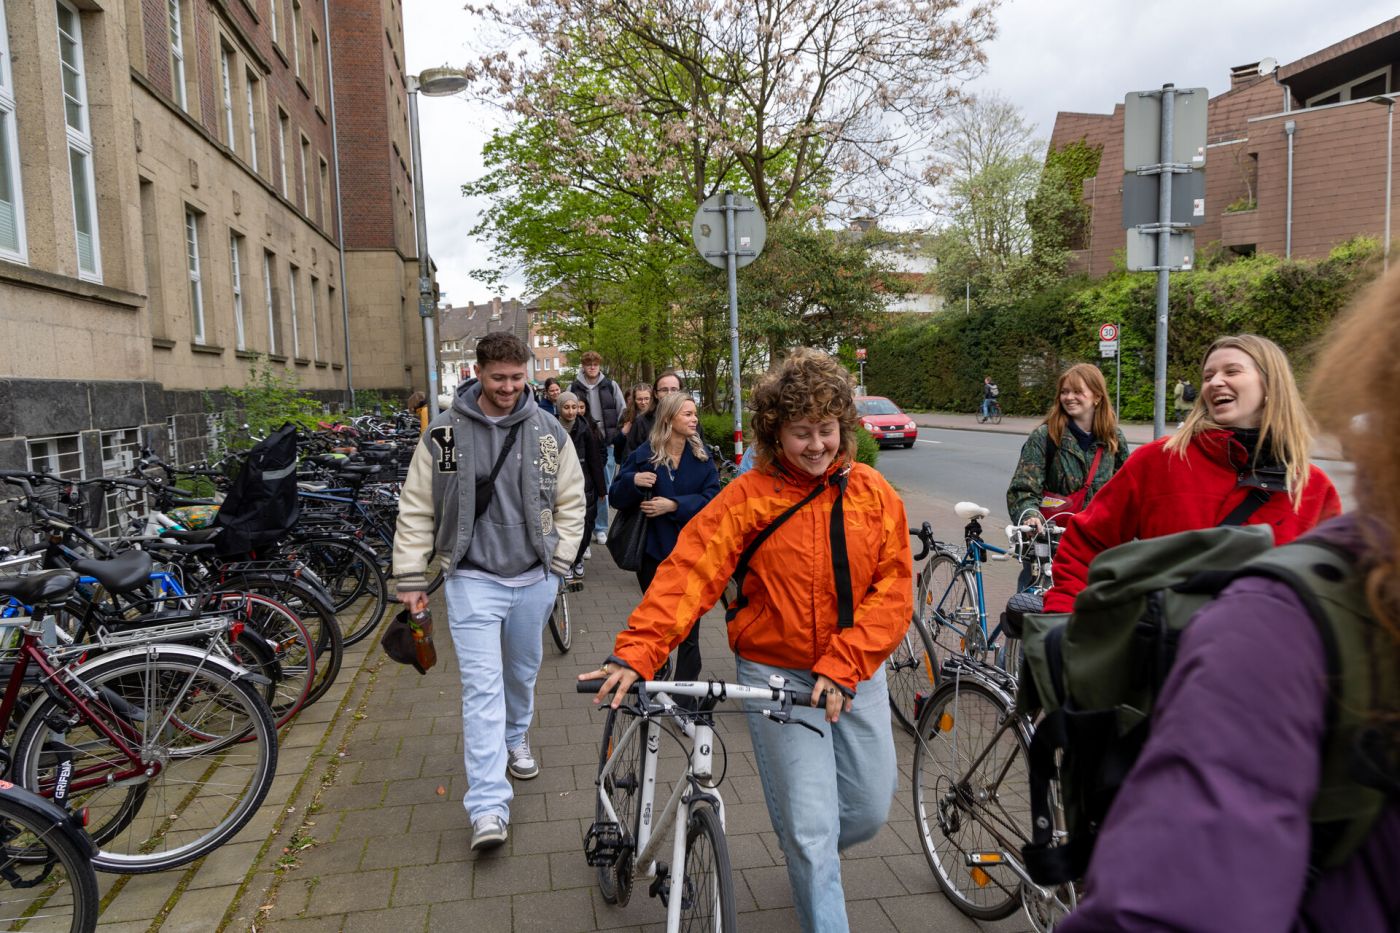 Eine Gruppe von Personen geht an einem Gebäude vorbei, mehrere Personen schieben Fahrräder und lachen. (Foto: FH Münster/Anna Thelen)